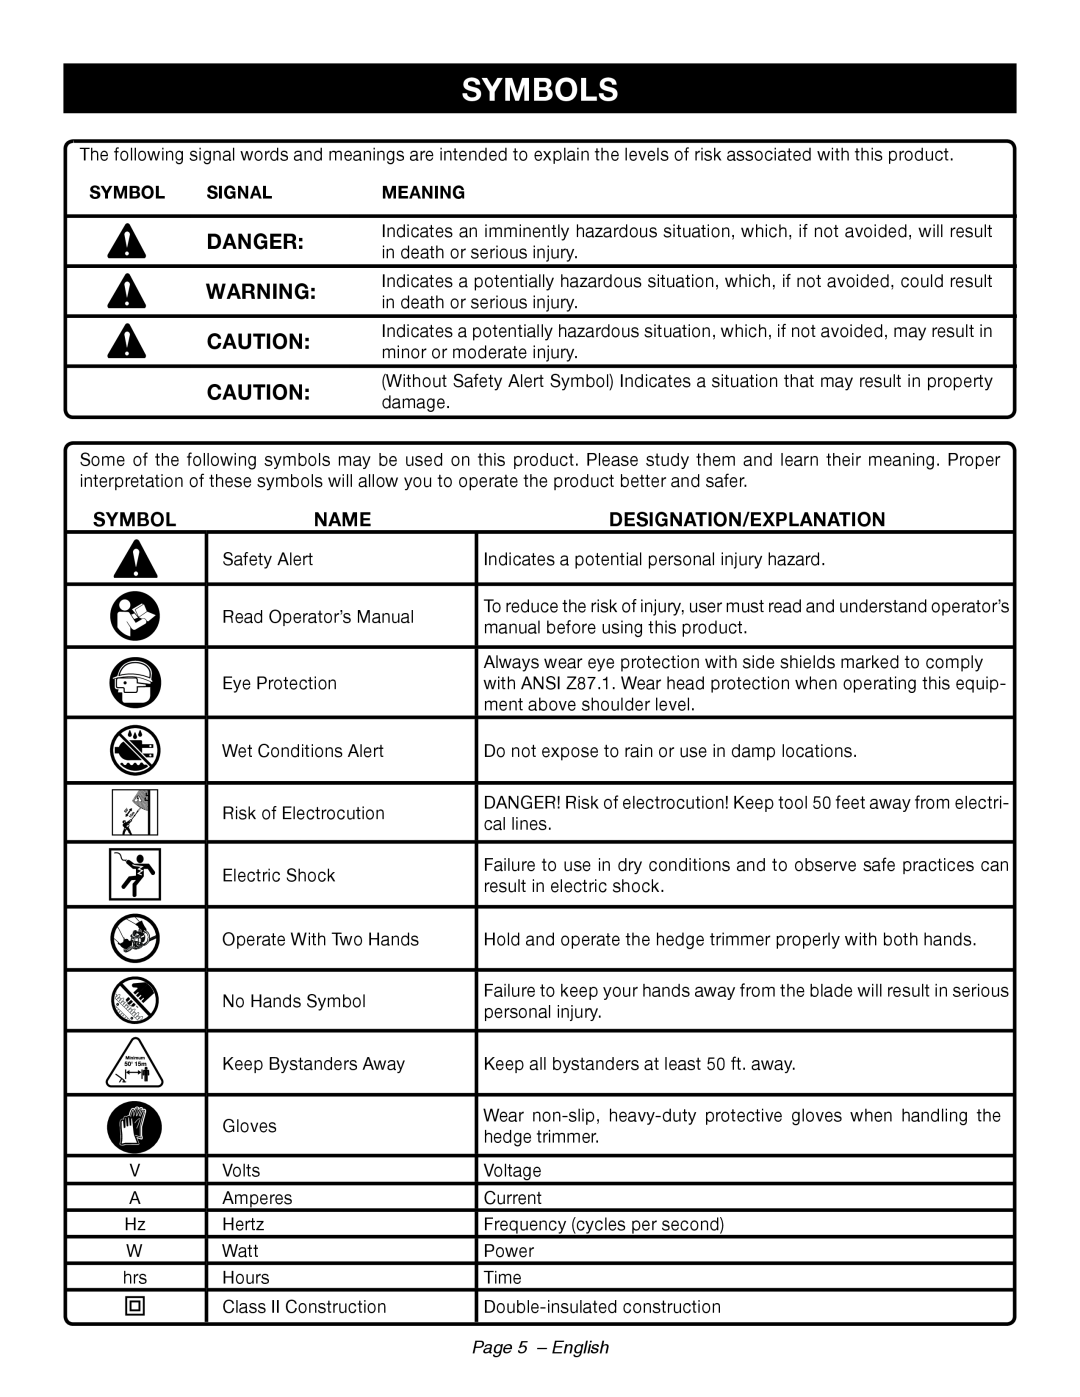 Ryobi RY44140 manuel dutilisation Symbols, Danger, Name, Designation/Explanation, Page 5 - English 